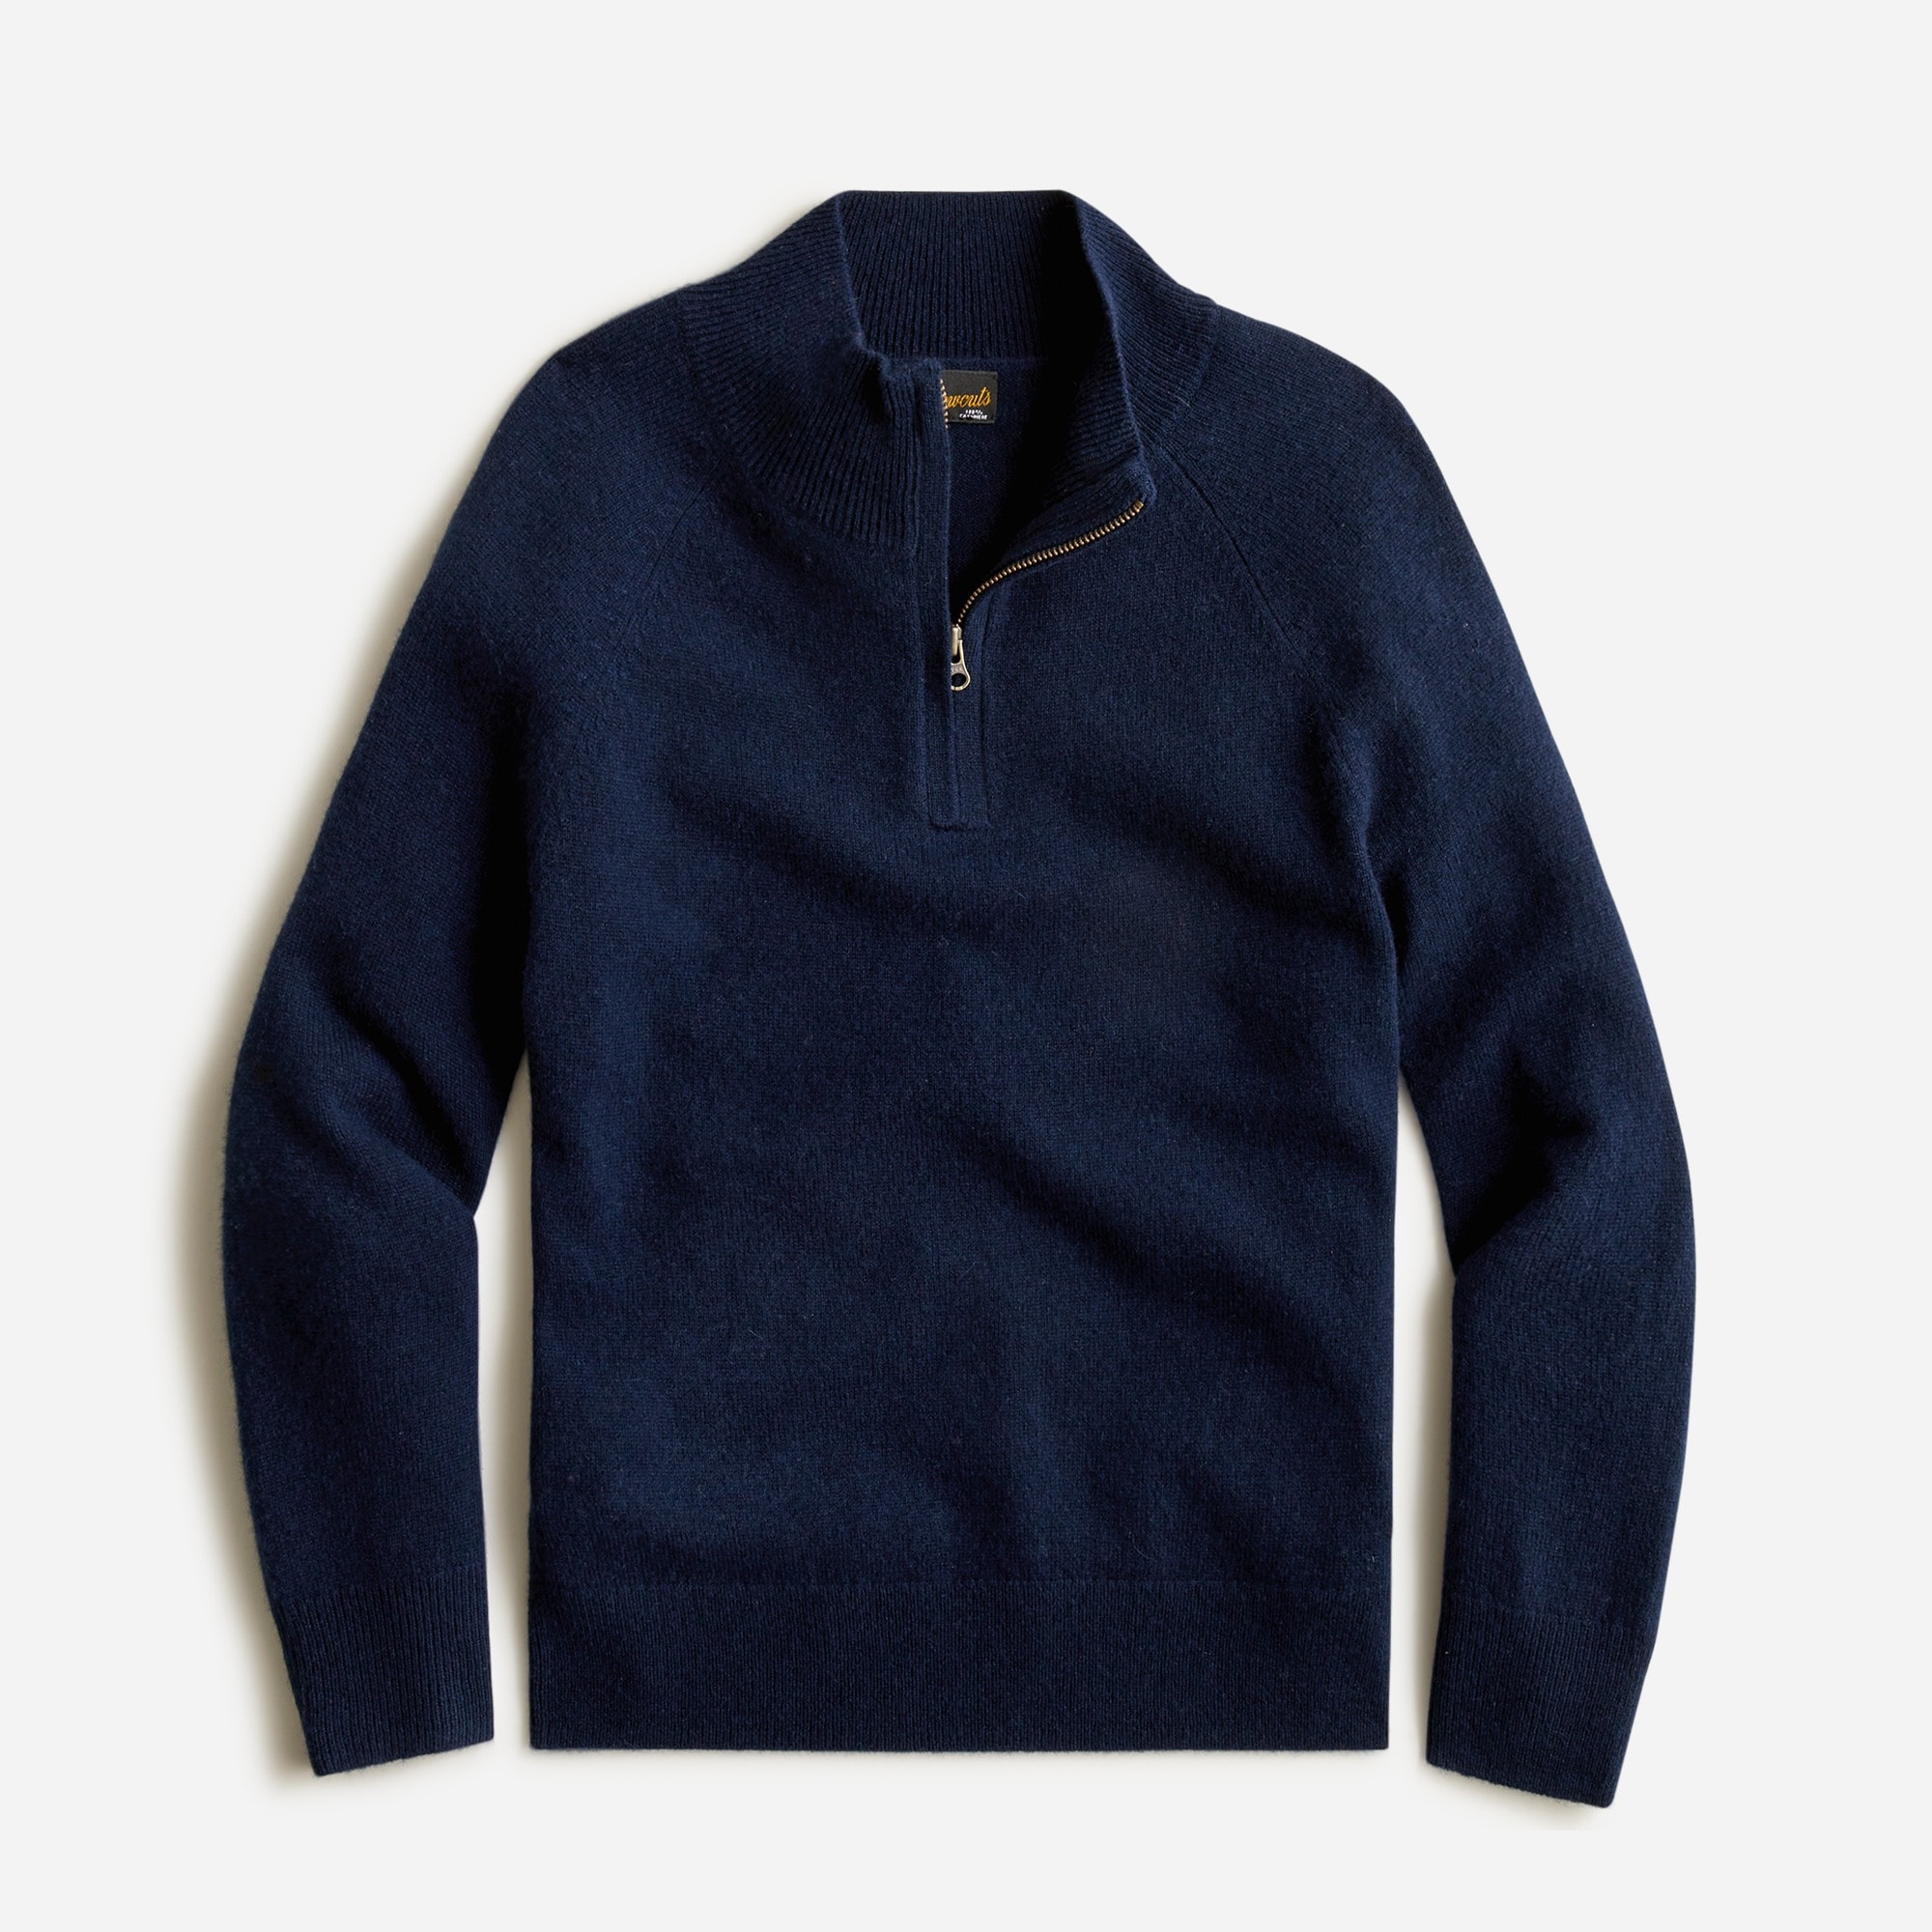 제이크루 보이즈 스웨터 J.crew Boys cashmere half-zip sweater,NAVY